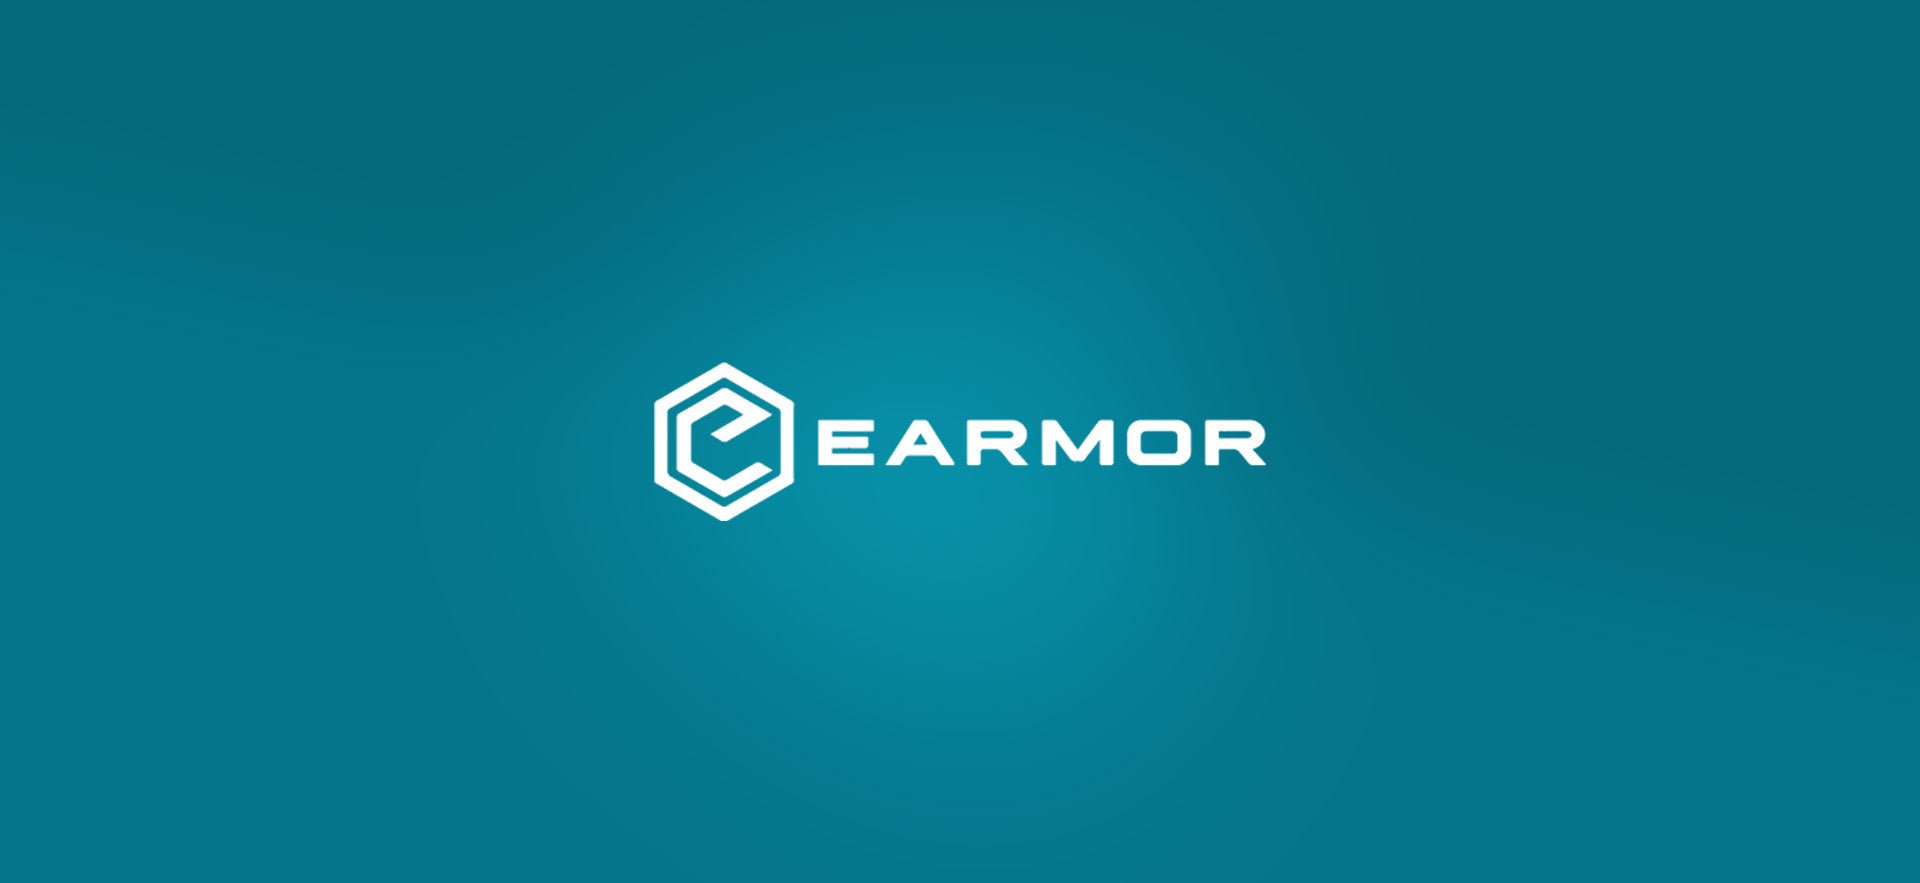 Earmor - Weekend-Warrior.Shop